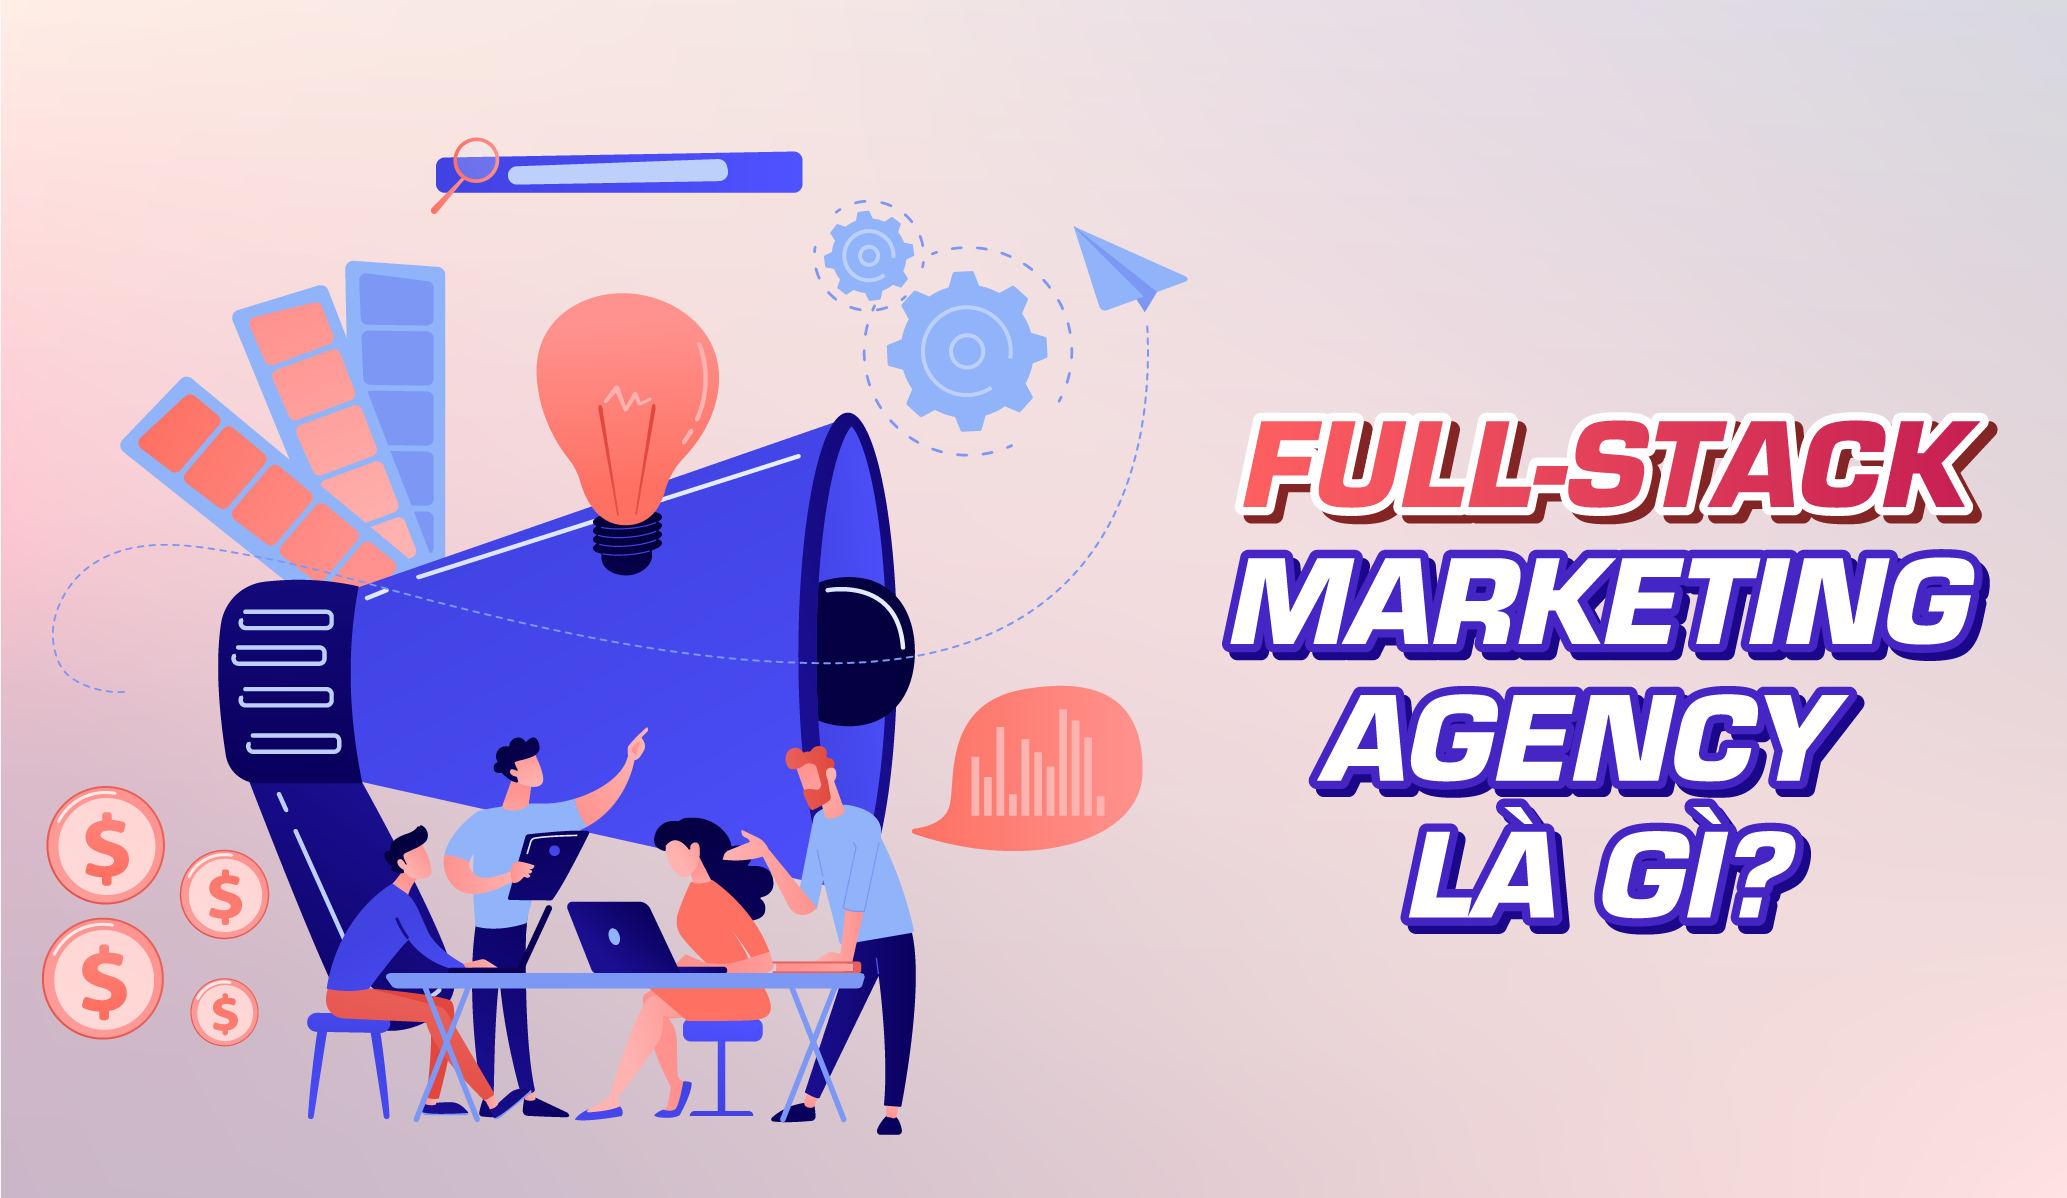 Full-Stack Marketing Agency là gì?